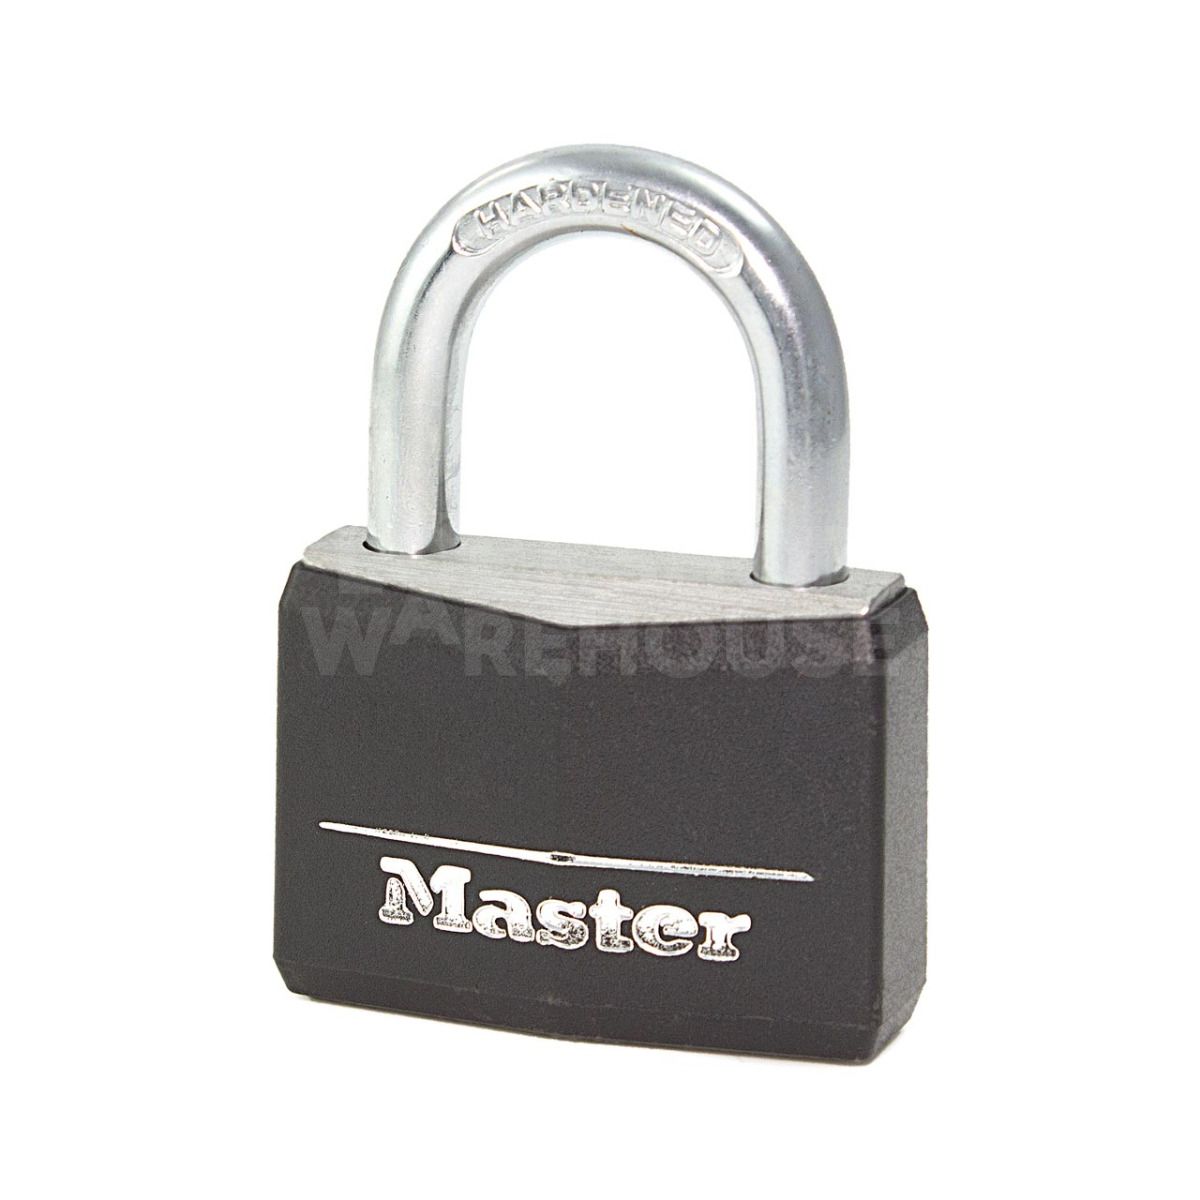 Master Lock 9140 Aluminium padlock - Black